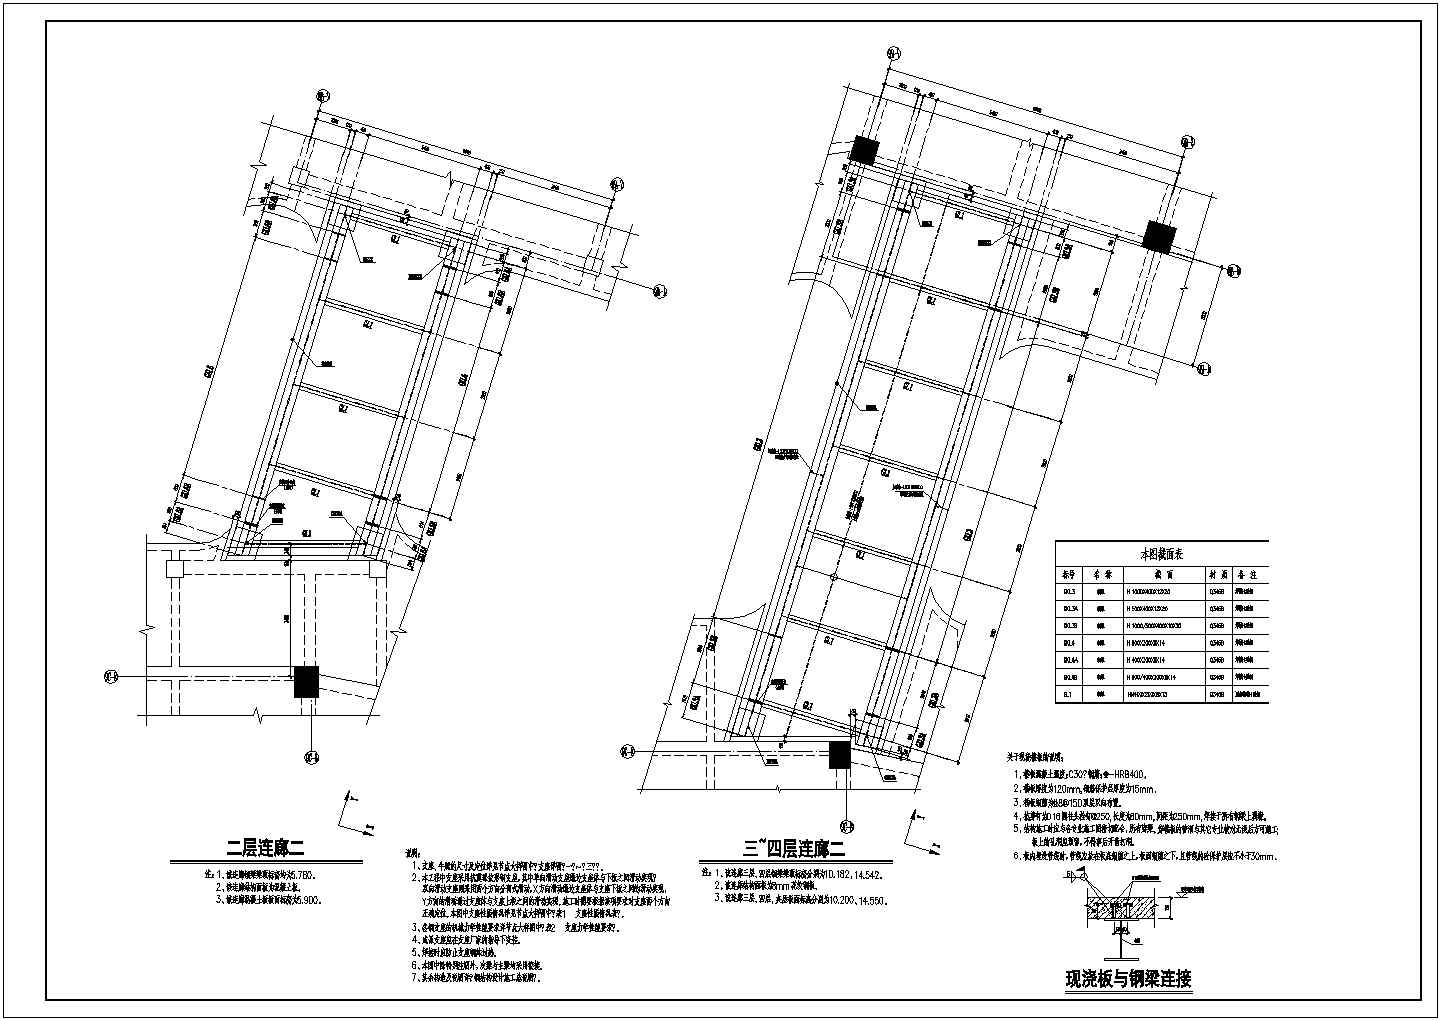 钢结构连廊(滑动支座)及观光电梯结构图